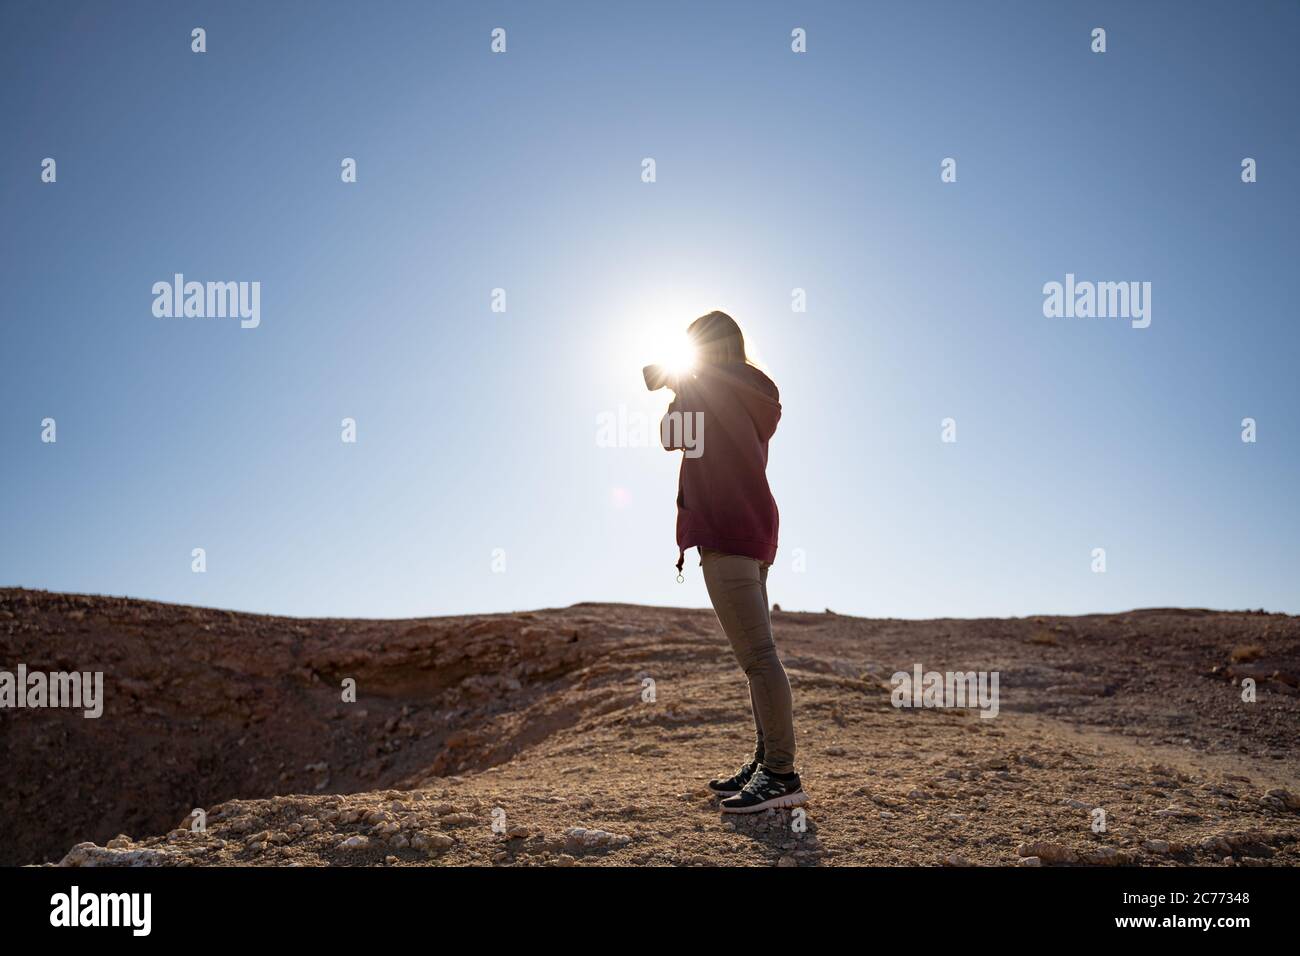 Frau fotografiert, während sie gegen die helle Sonne an Land in der Wüste steht Stockfoto